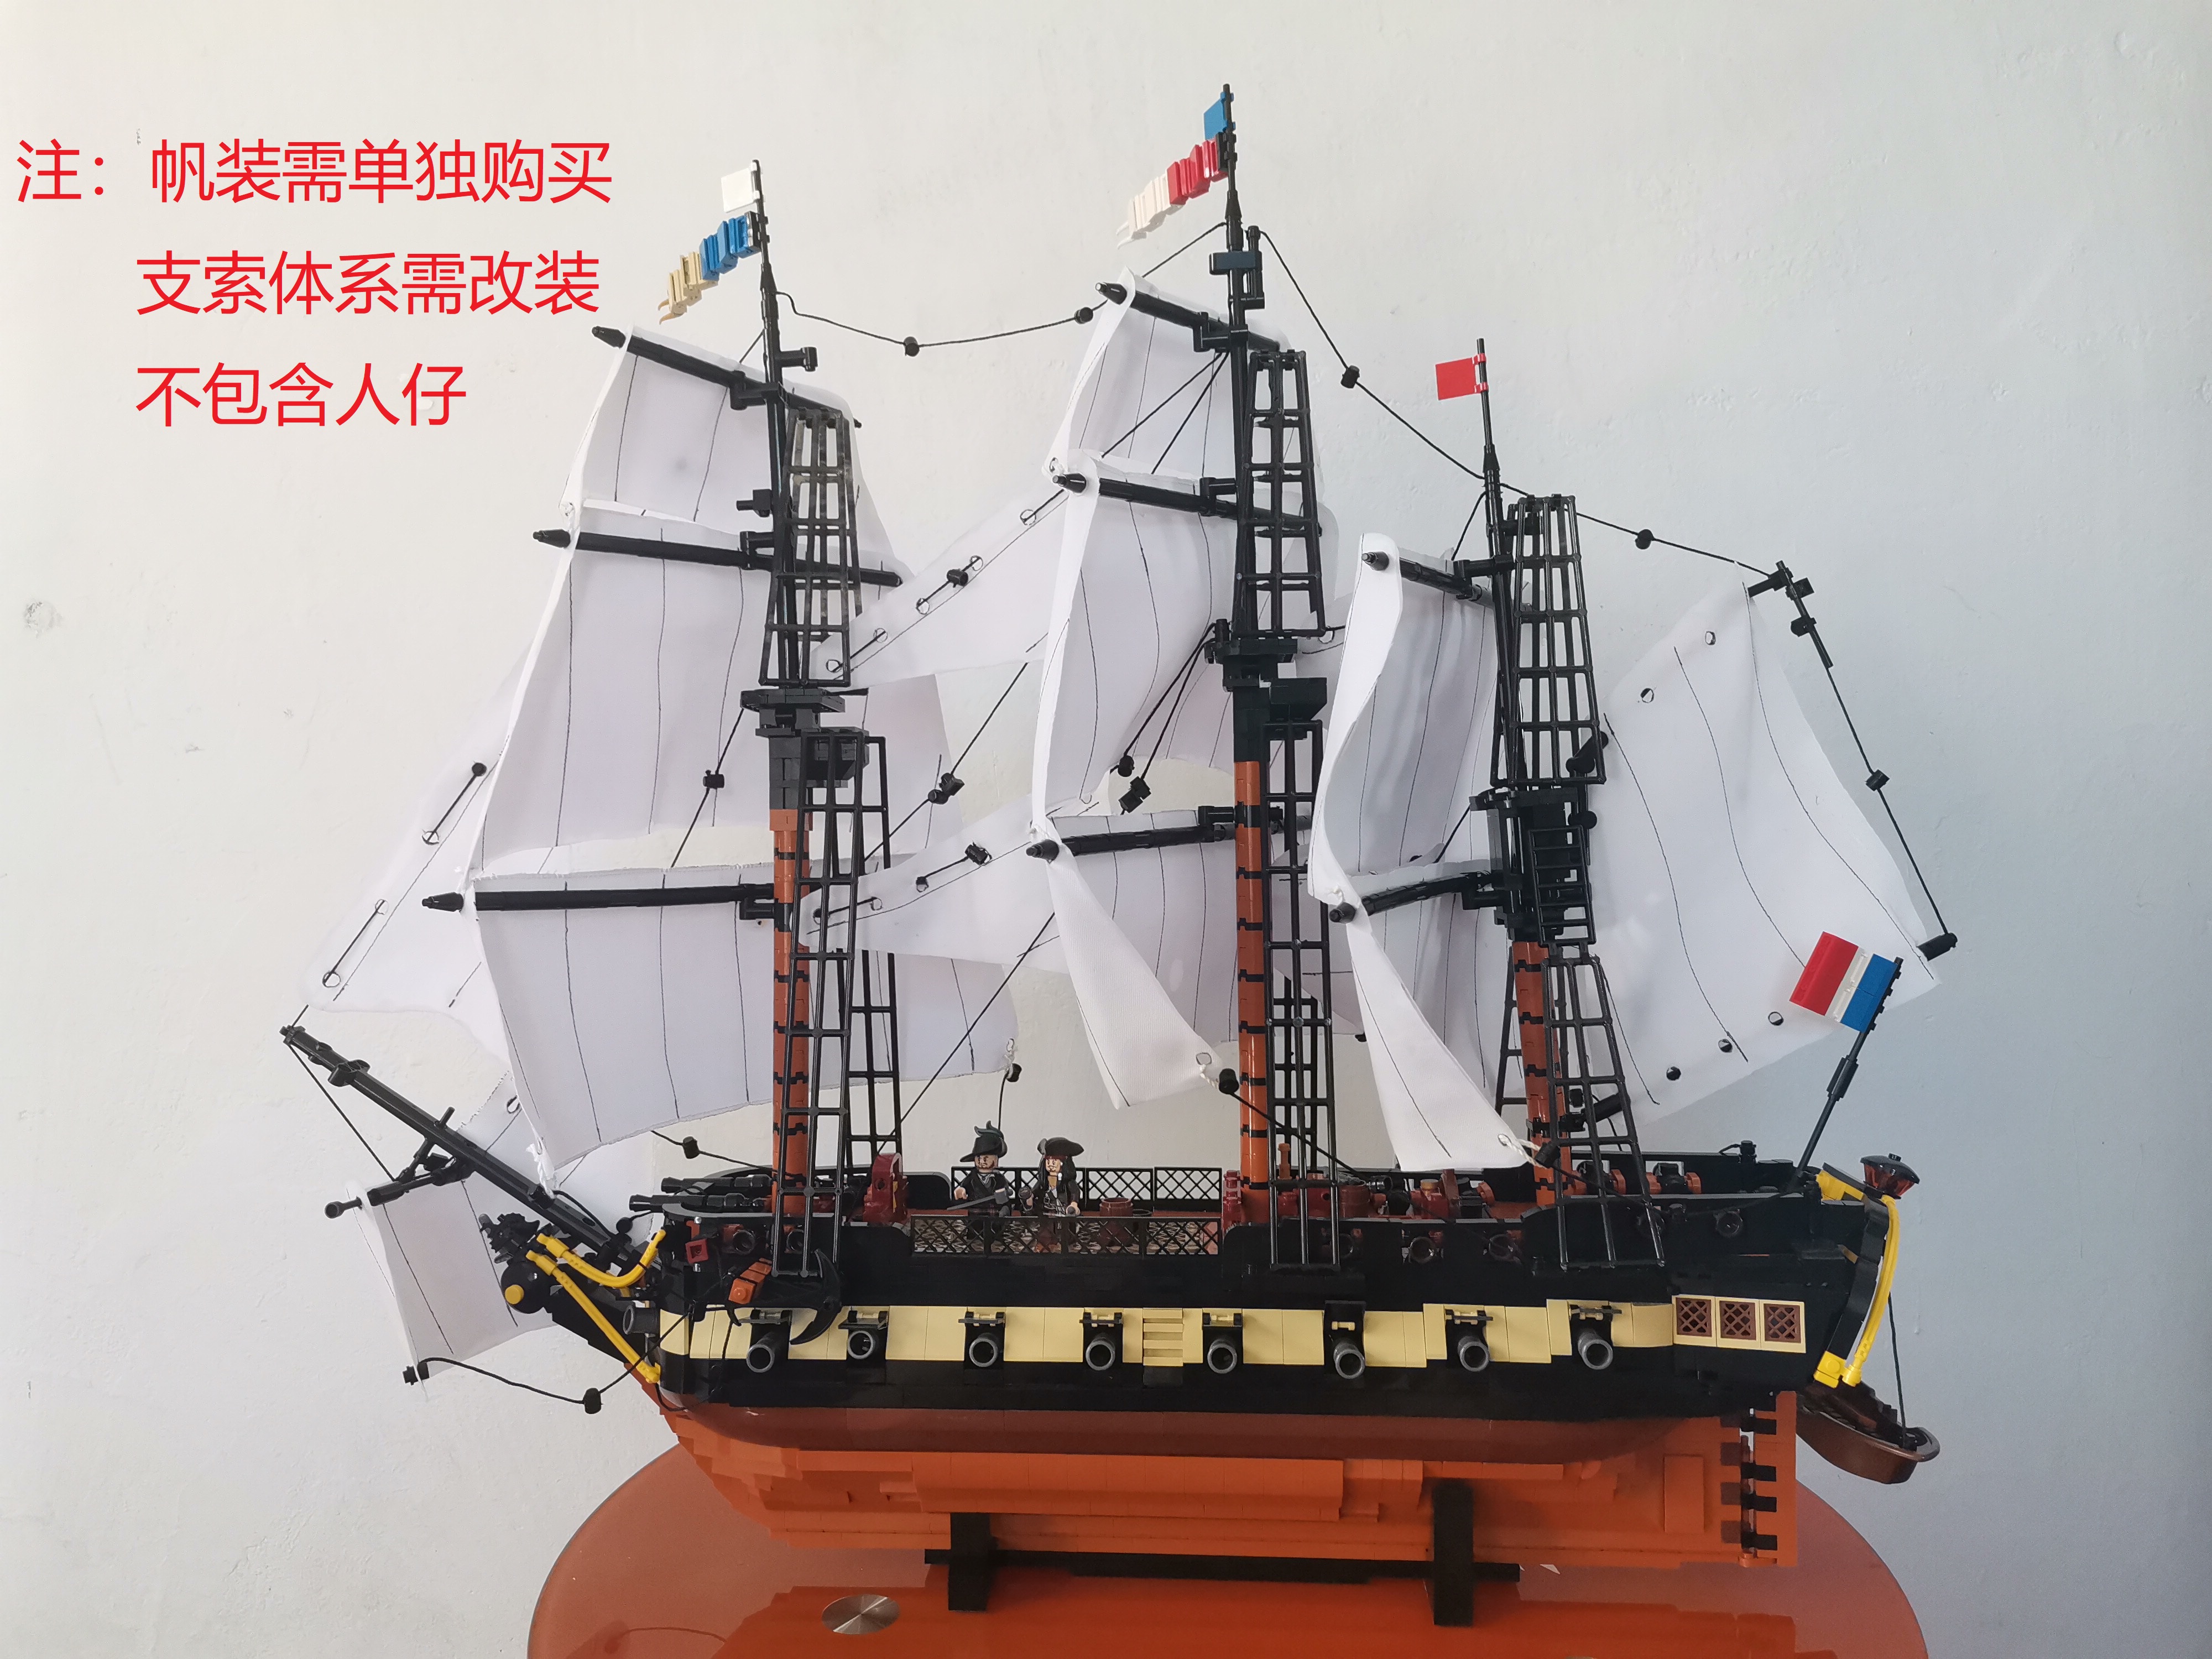 【东积院】五级舰巡洋风帆战舰航海内构摆件拼装乐高积木模型moc